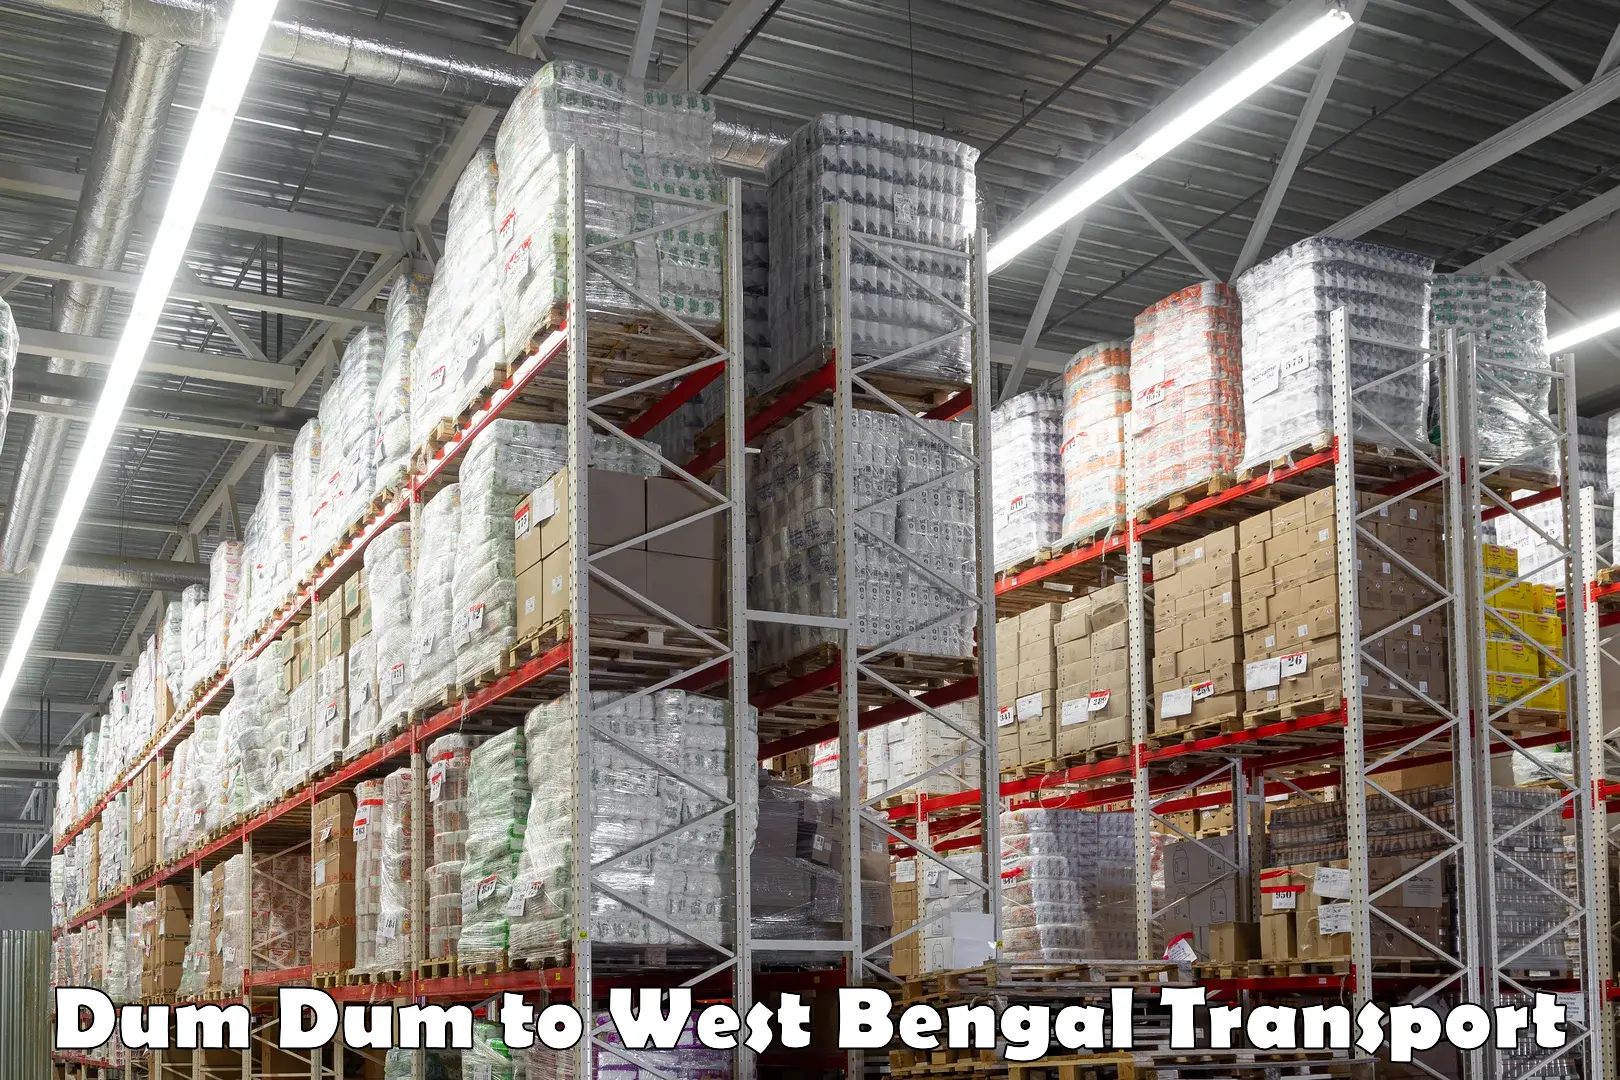 Container transport service Dum Dum to West Bengal